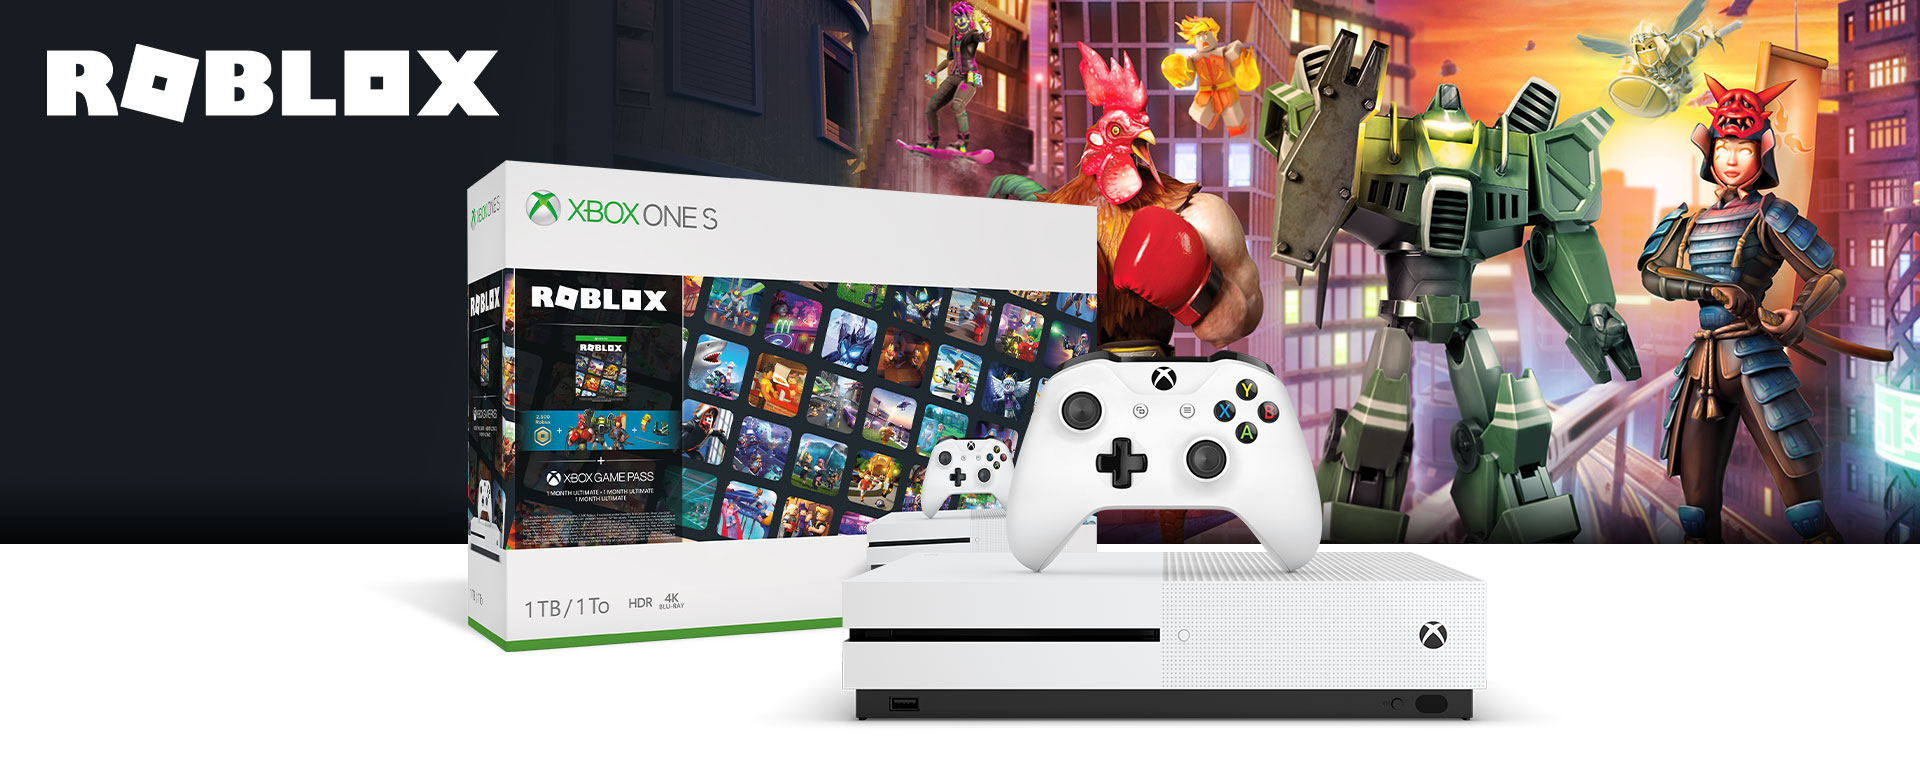 Xbox One S Roblox Bundel 1 Tb Xbox